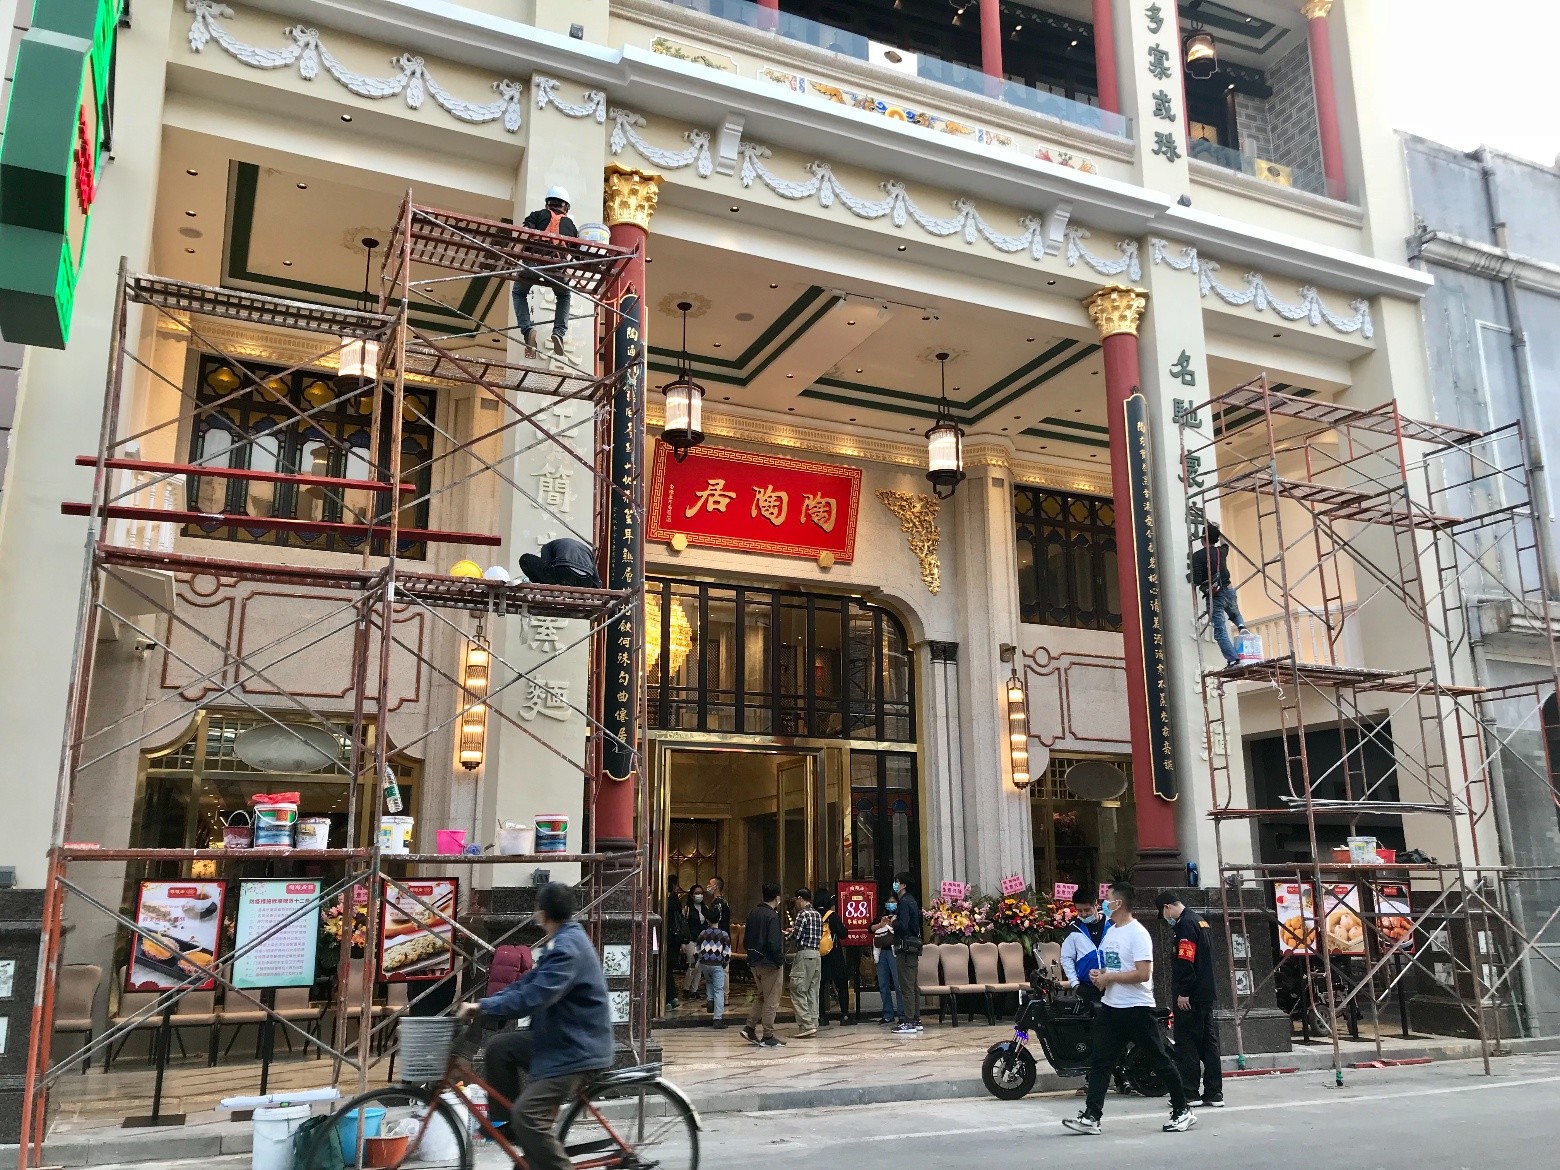 陶陶居百年老店重开,它会成为广州新的打卡地吗?